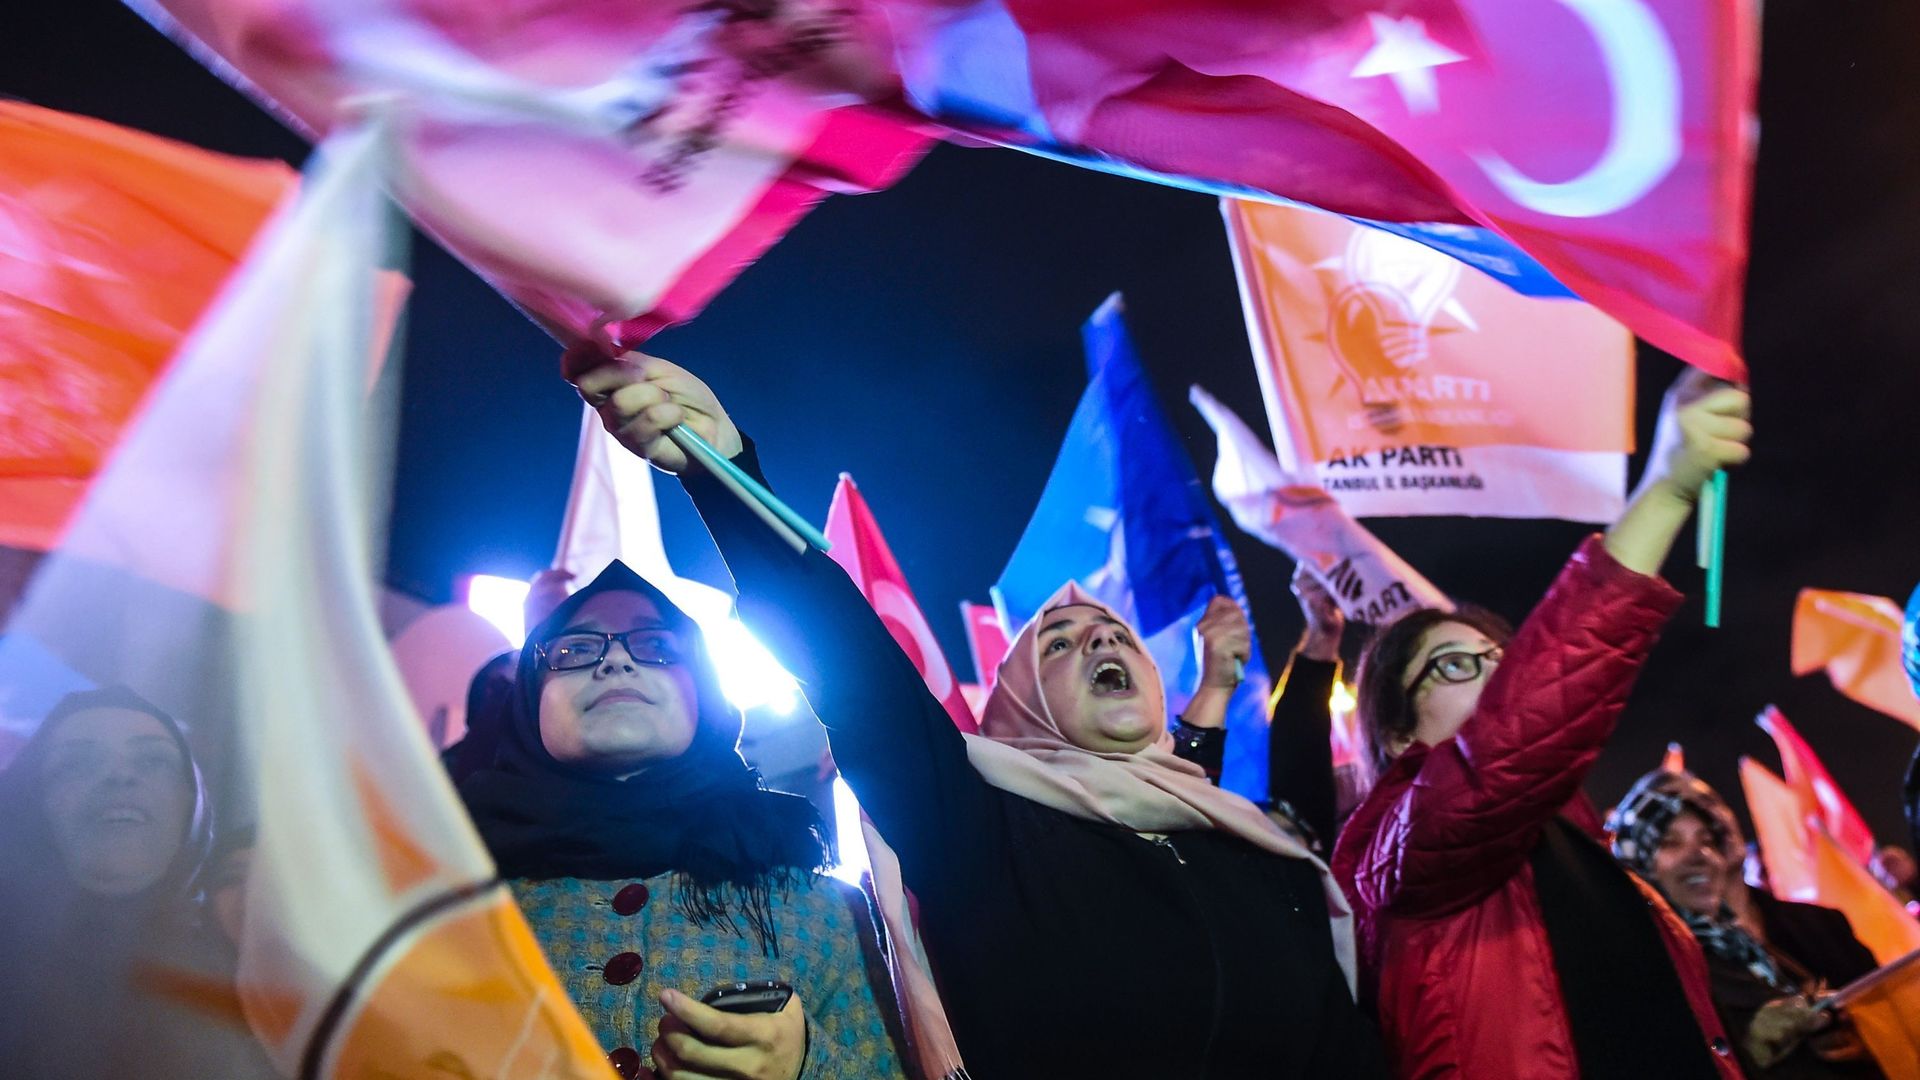 Législatives en Turquie: le parti du président Erdogan célèbre "un jour de victoire"